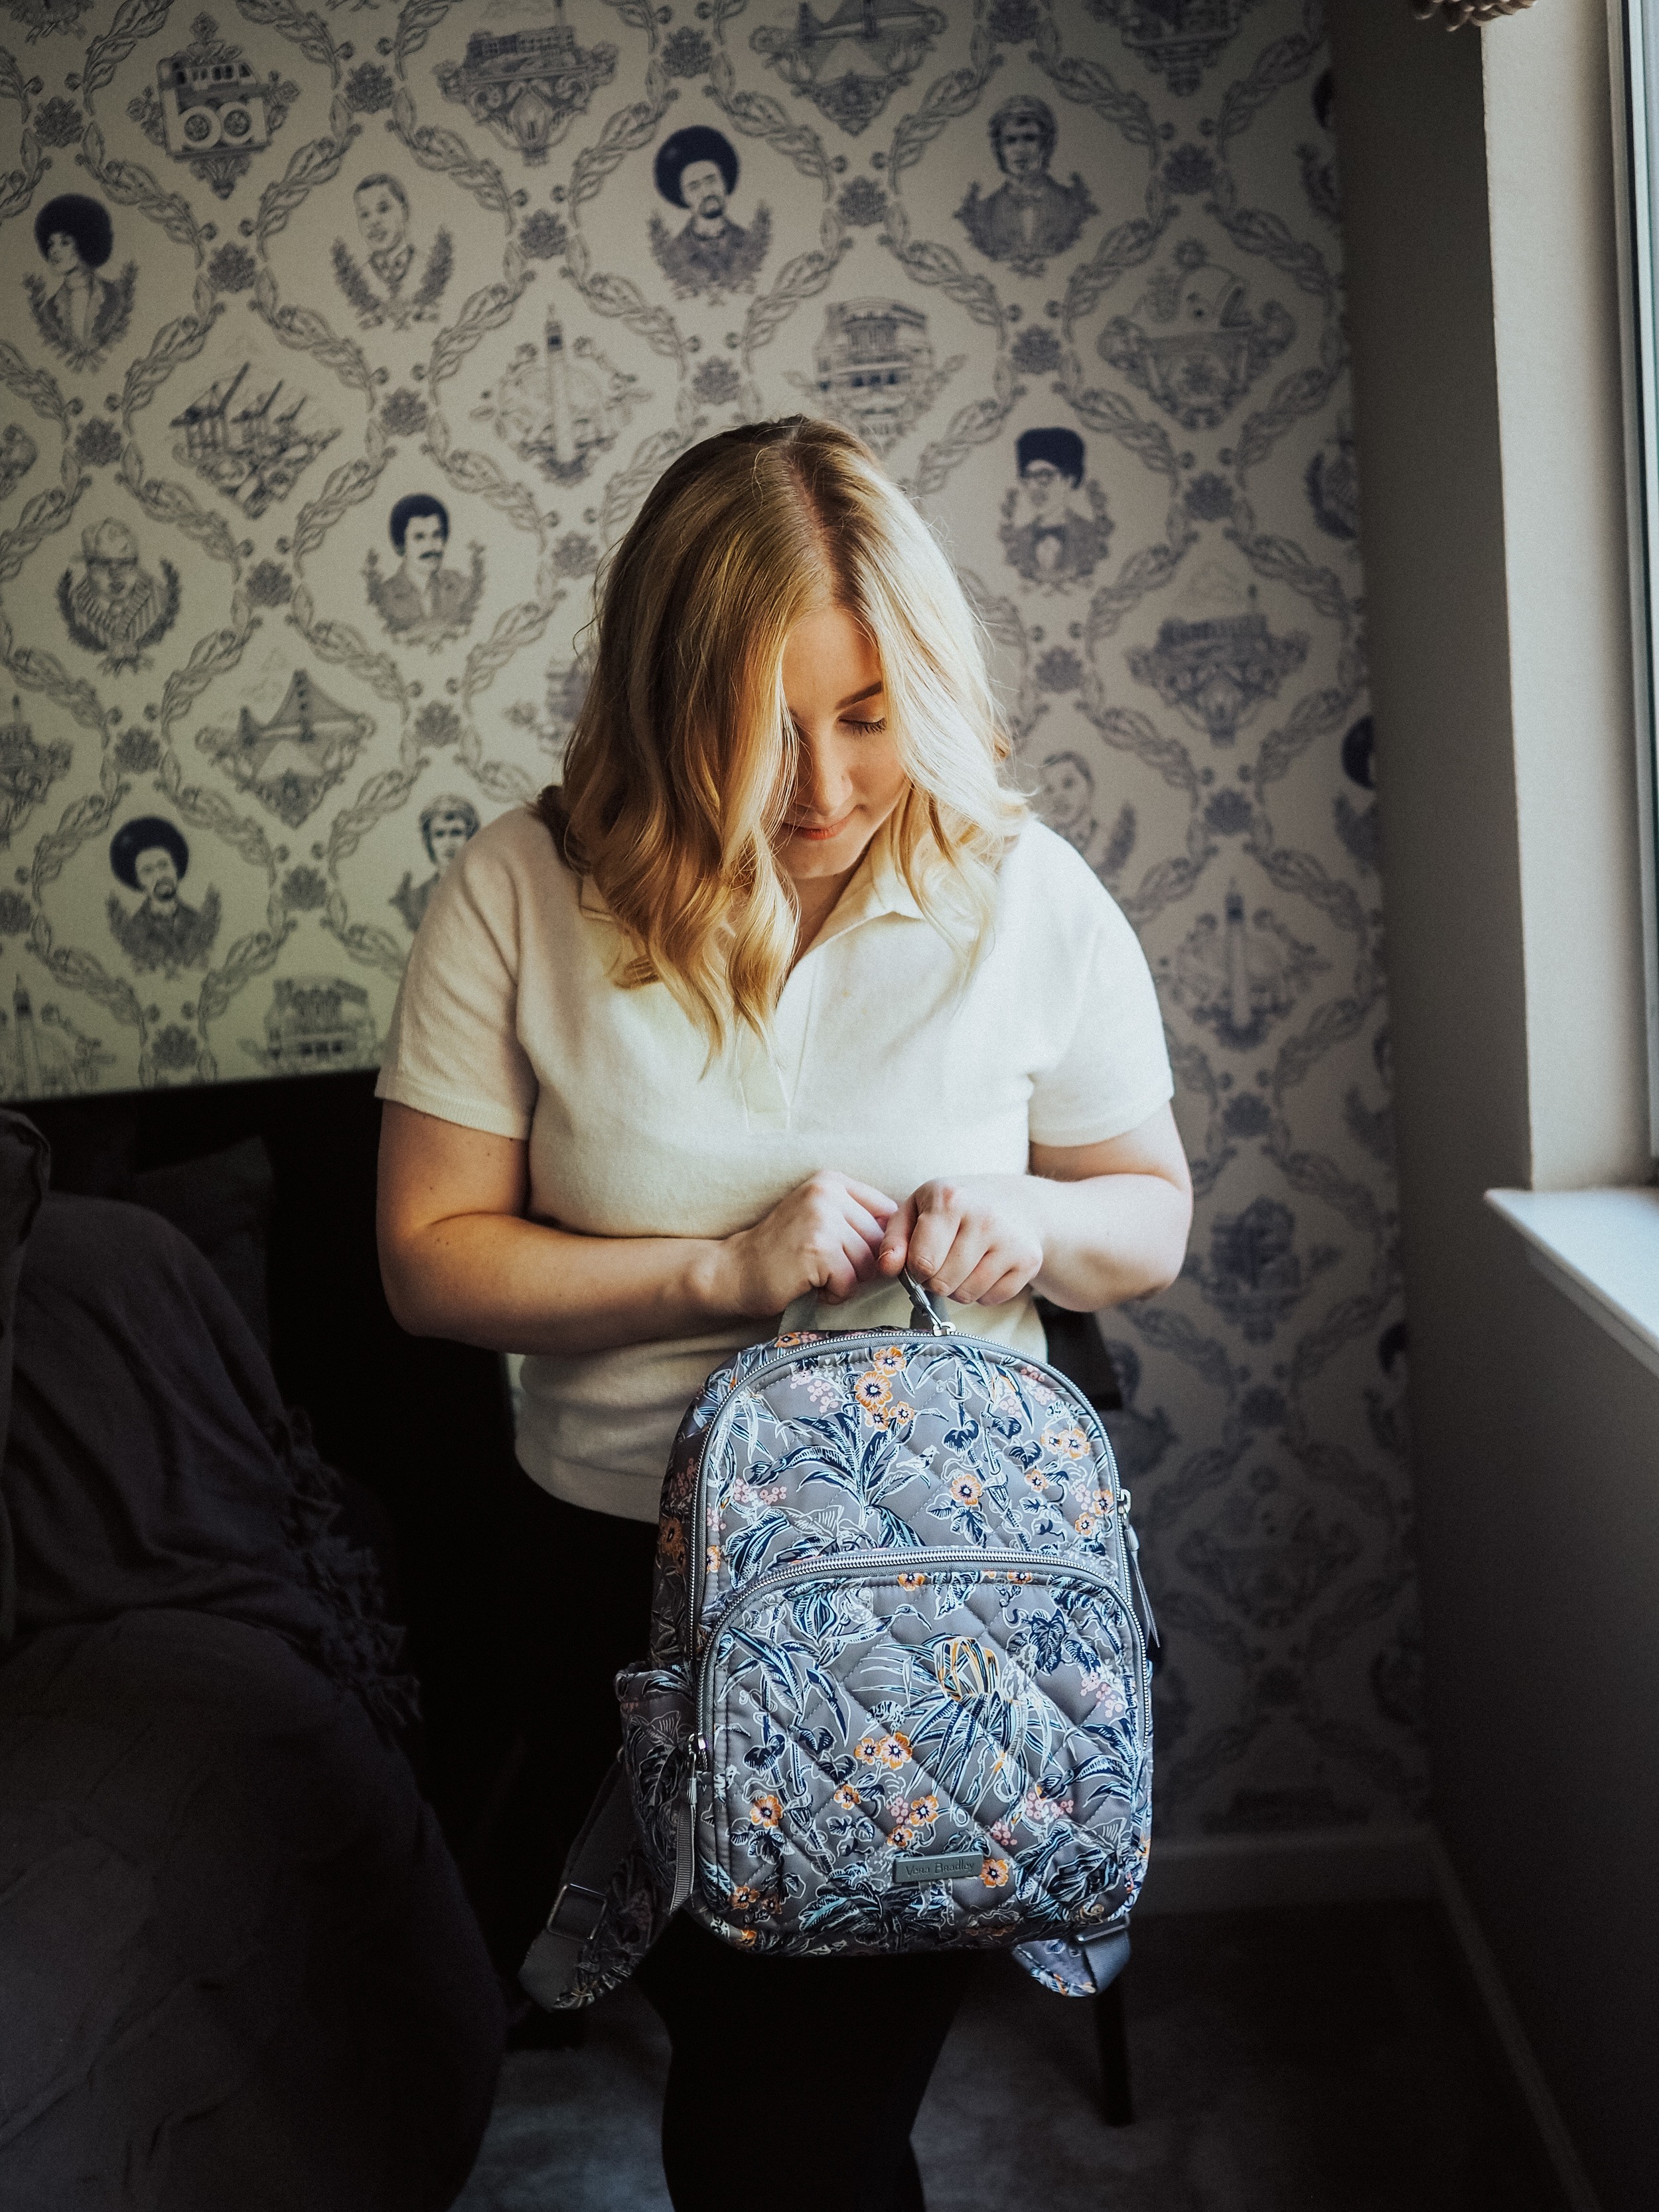 The Best Backpacks for Women - by Kelsey Boyanzhu